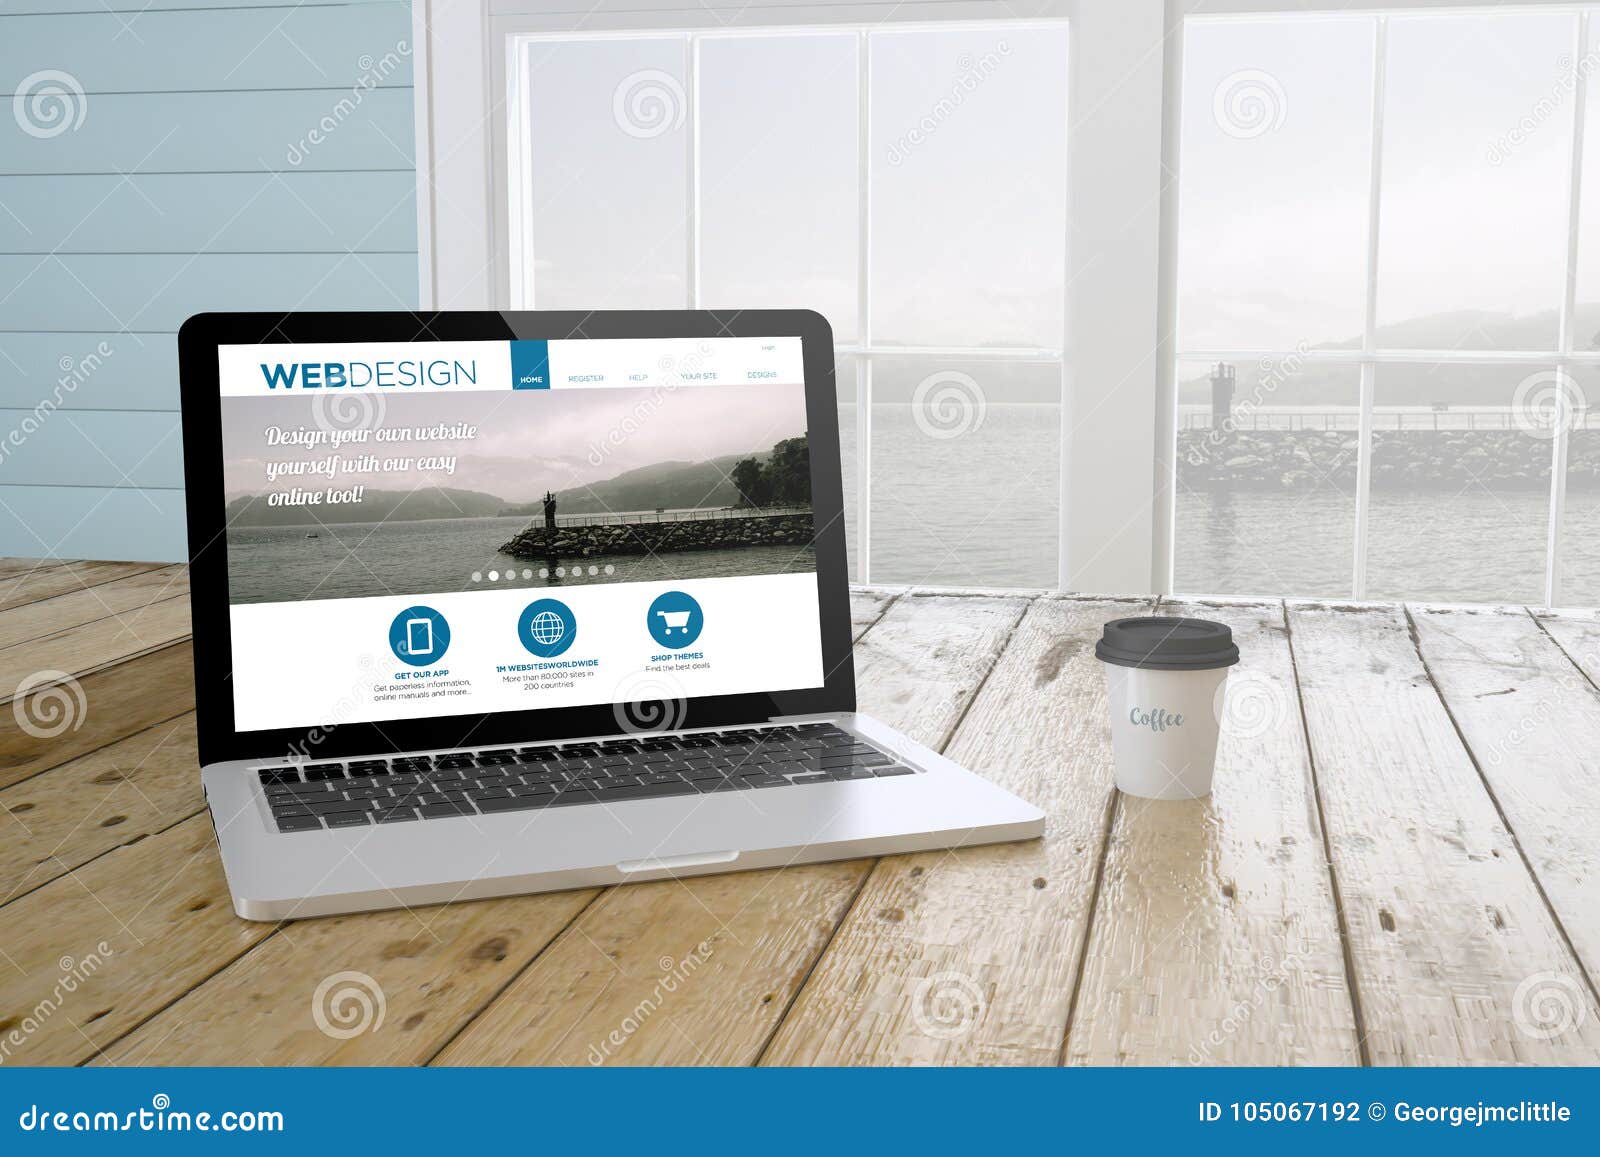 Được thiết kế đặc biệt cho ngành thiết kế web, laptop mang lại cho bạn sự tiện lợi và đa năng nhất. Hãy cùng tiếp cận với những bức ảnh liên quan đến thiết kế web, website và môi trường làm việc của các designer chuyên nghiệp trên toàn thế giới.